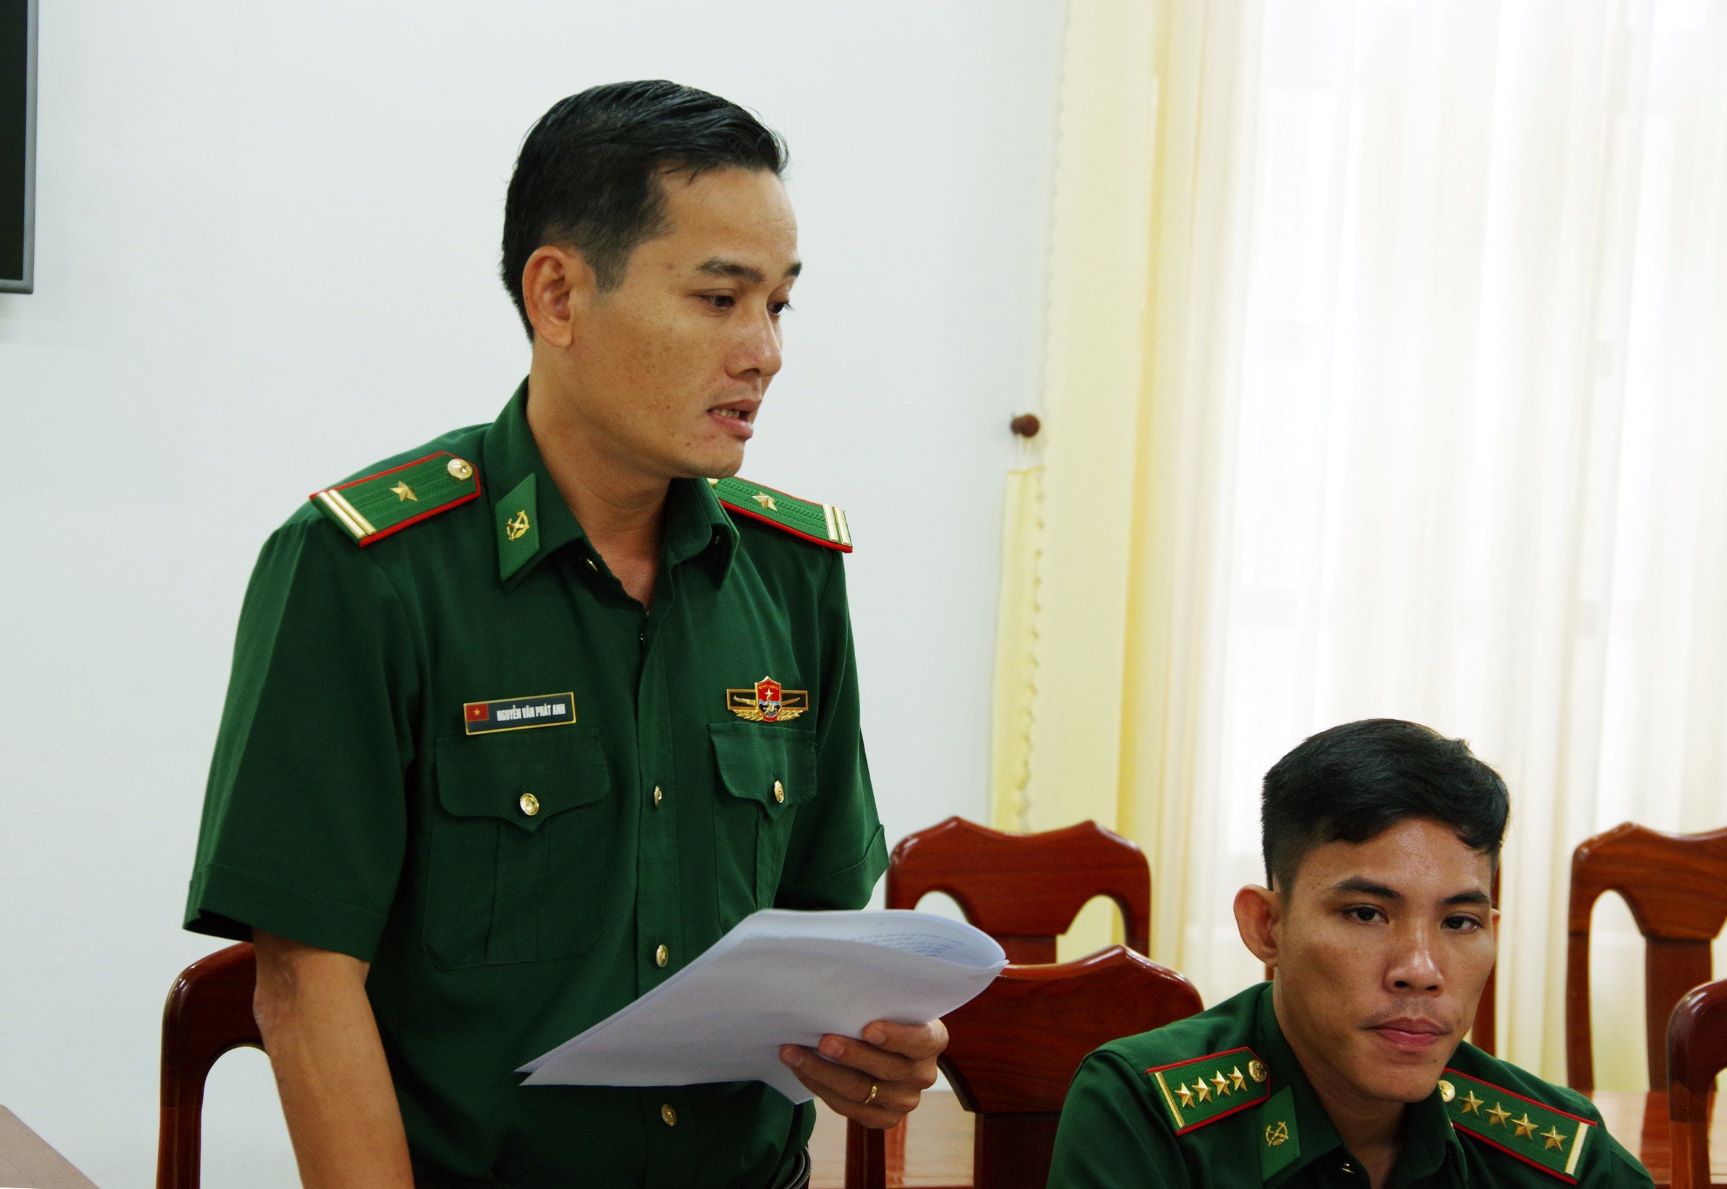 Thiếu tá Nguyễn Văn Phát Anh, Chính trị viên Đồn Biên phòng cửa khẩu quốc tế Tịnh Biên phát biểu tham luận. Ảnh: Tuấn Kiệt